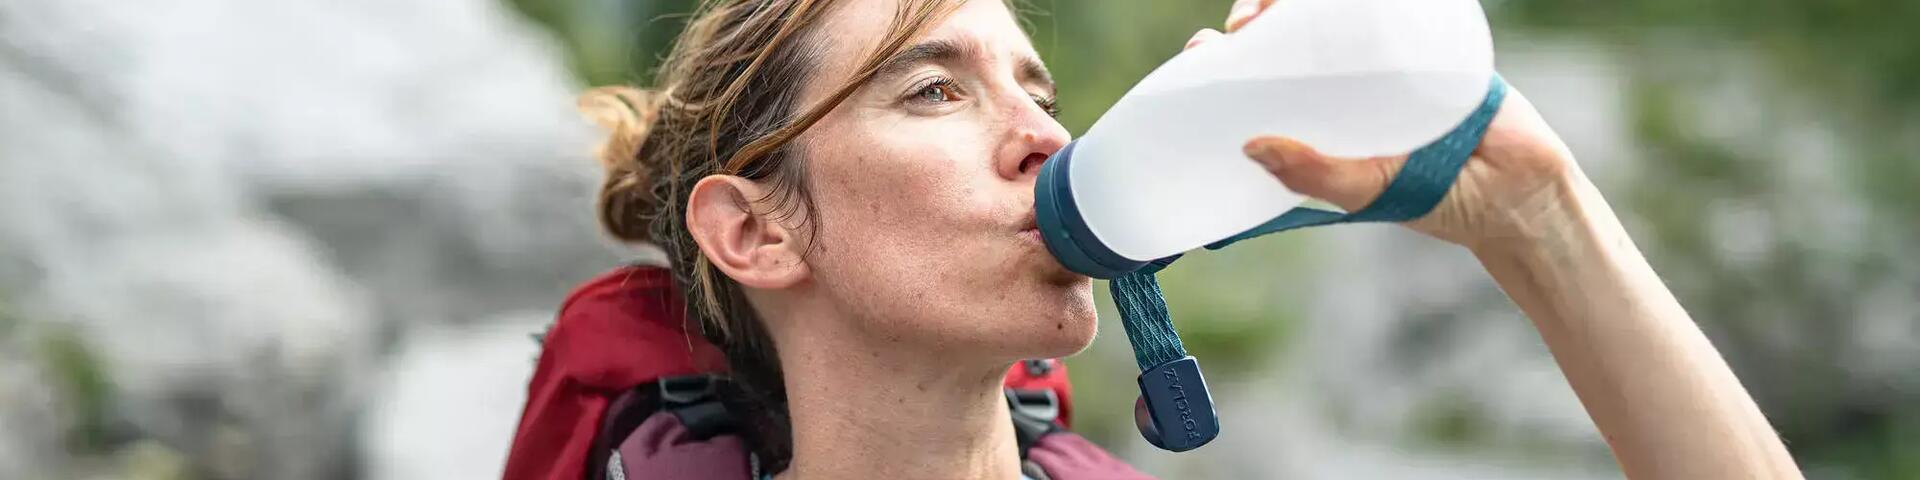 Comment purifier de l'eau en randonnée ?